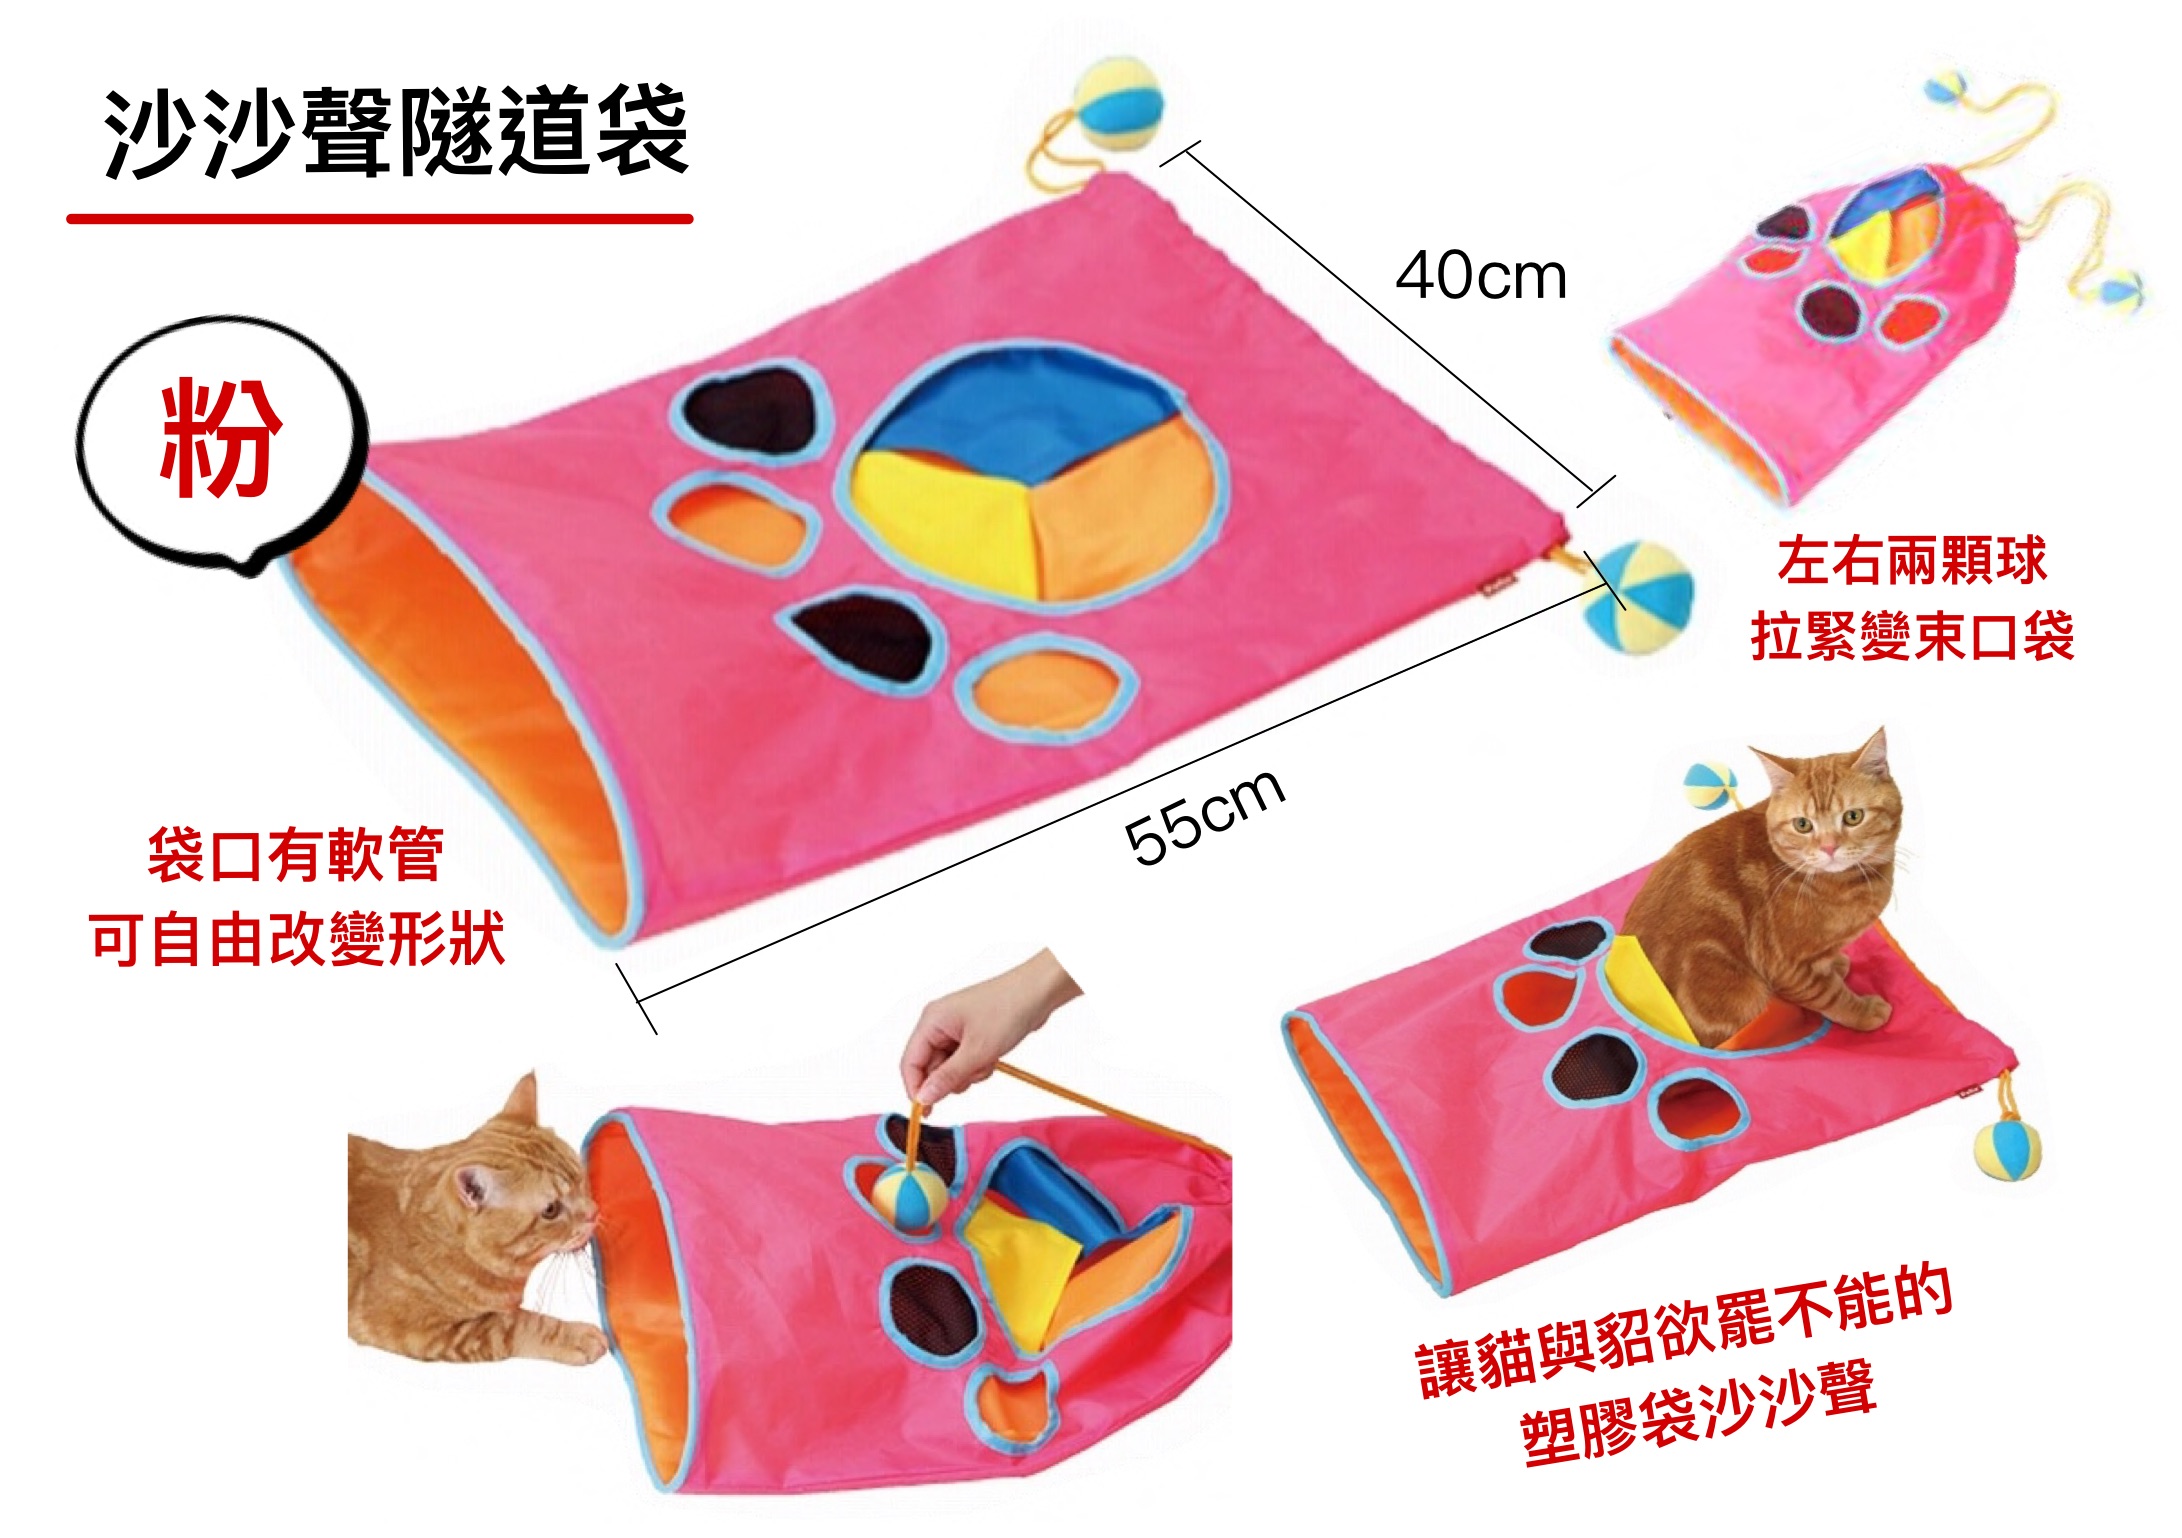 商品介紹_玩具_07塑膠袋1